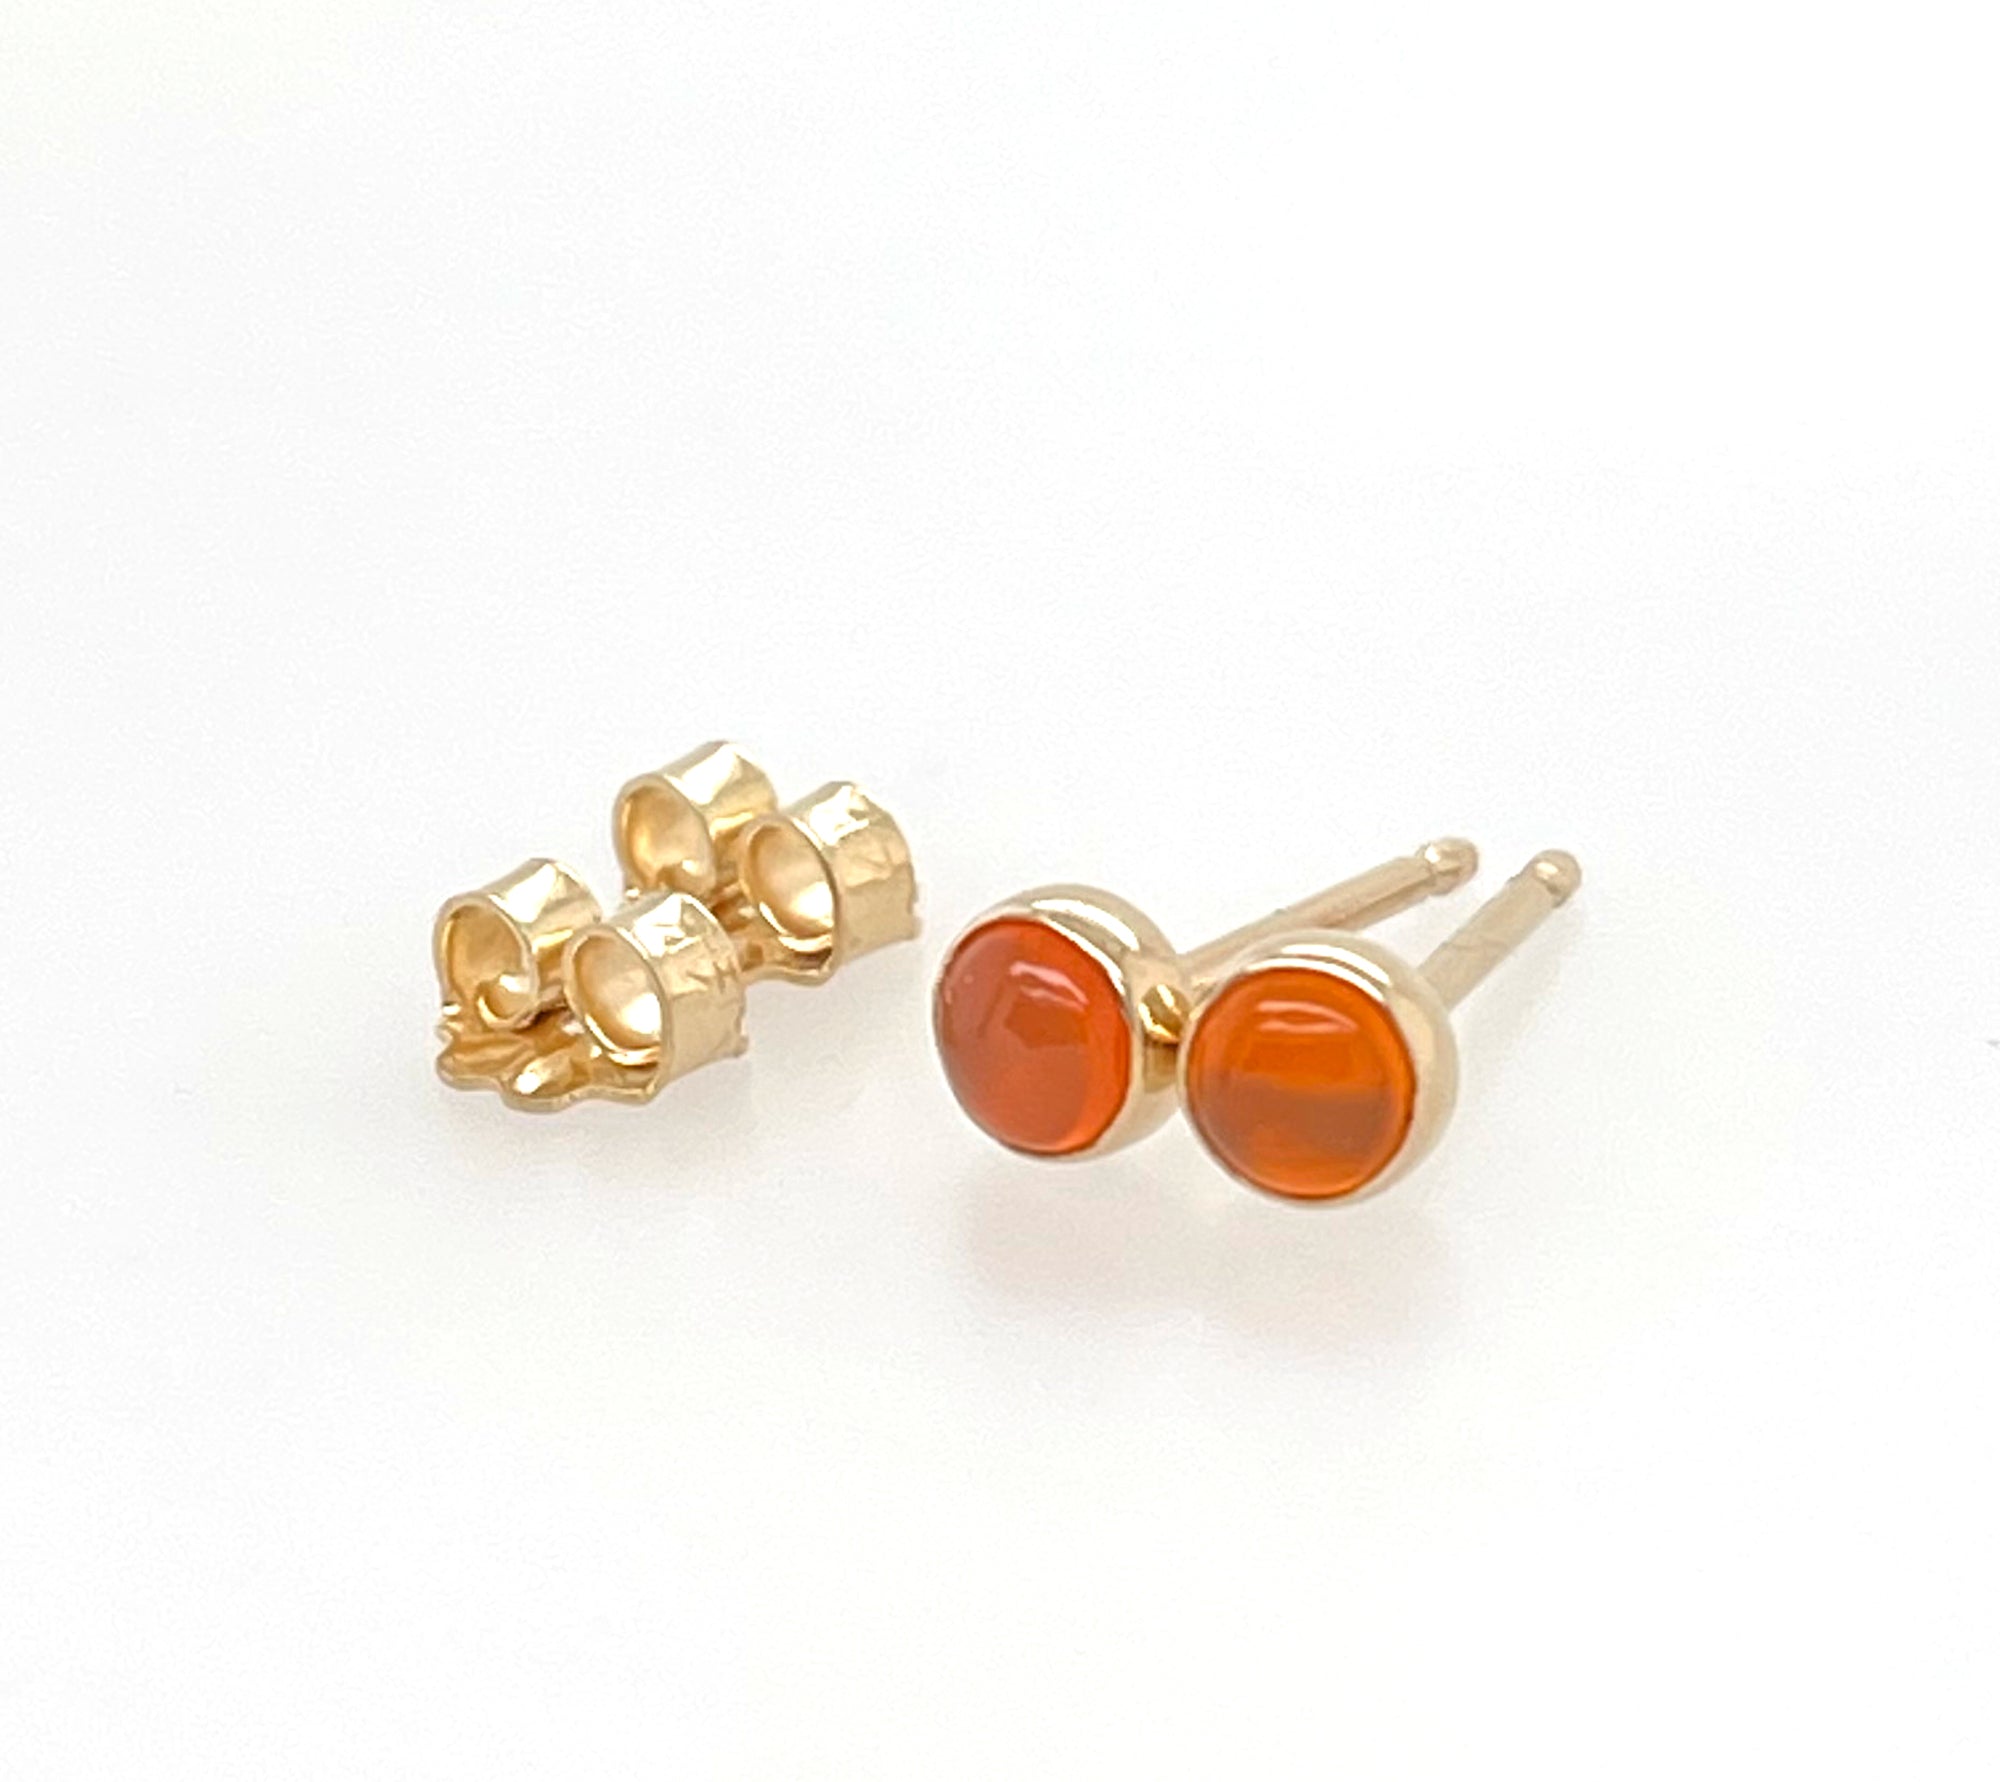 Carnelian Stud Earrings, 14k Gold Earrings, Gold Stud Earrings, Tiny Stud Earrings